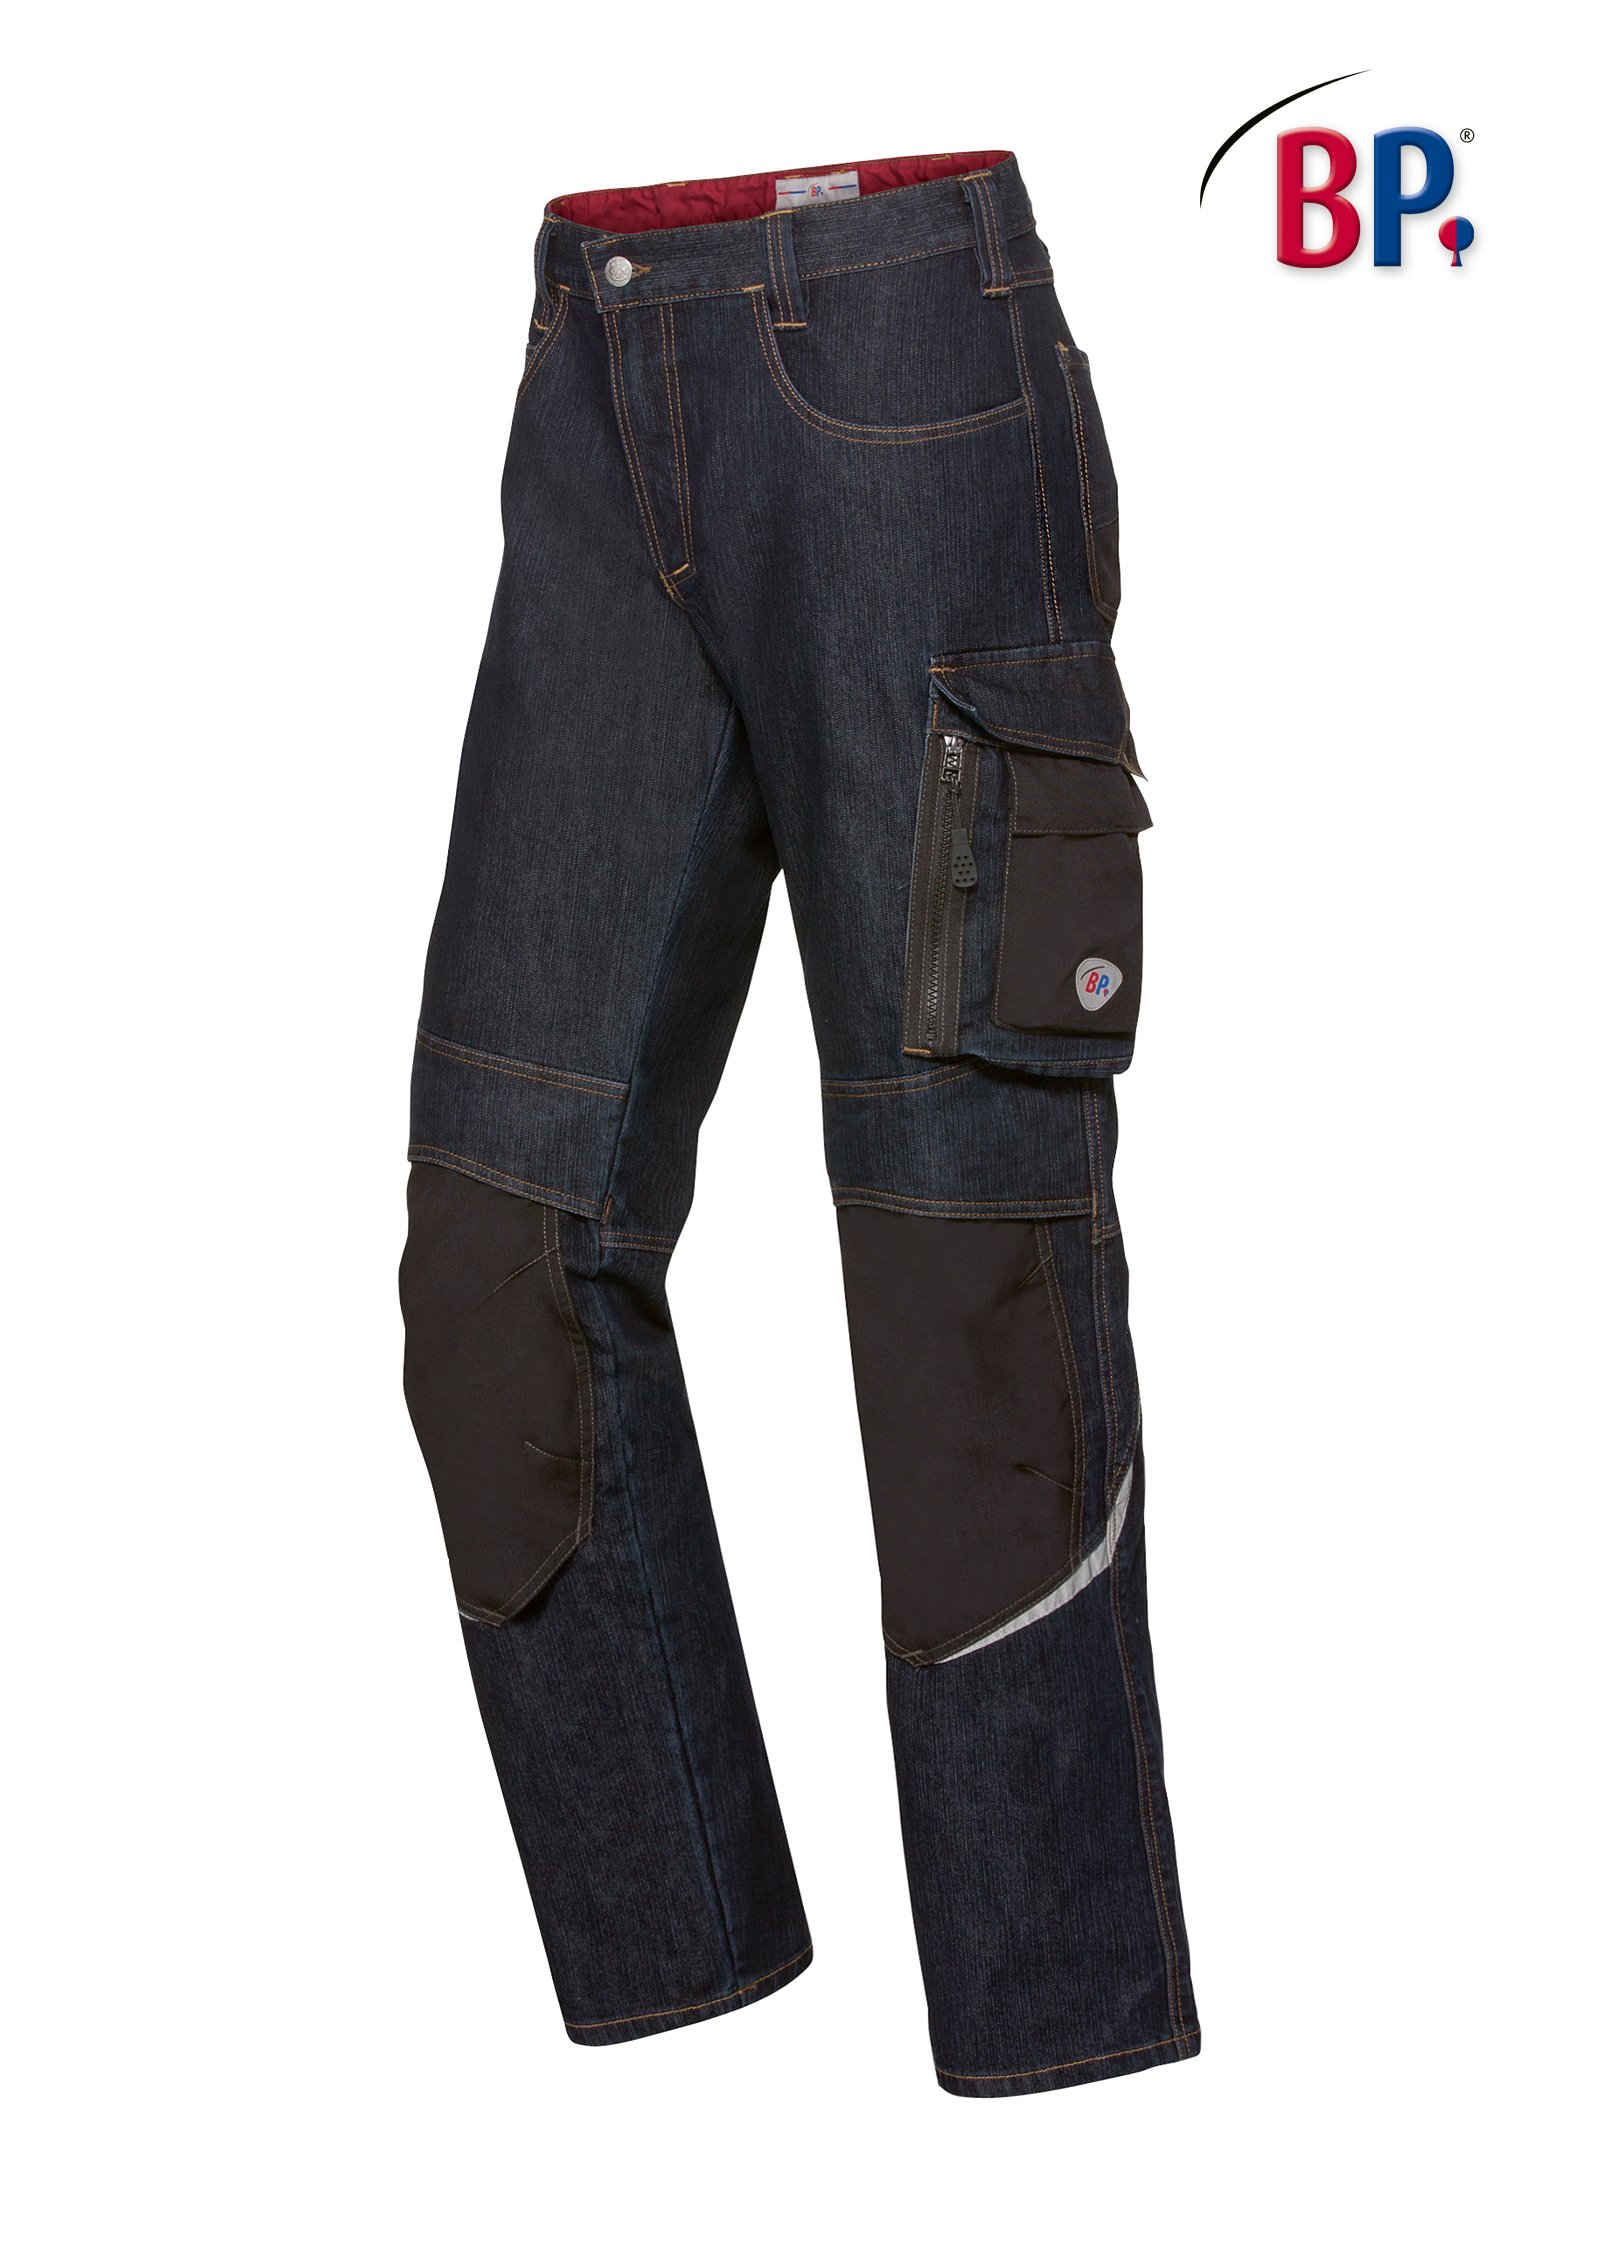 BP® Worker-Jeans mit Kniepolstertaschen